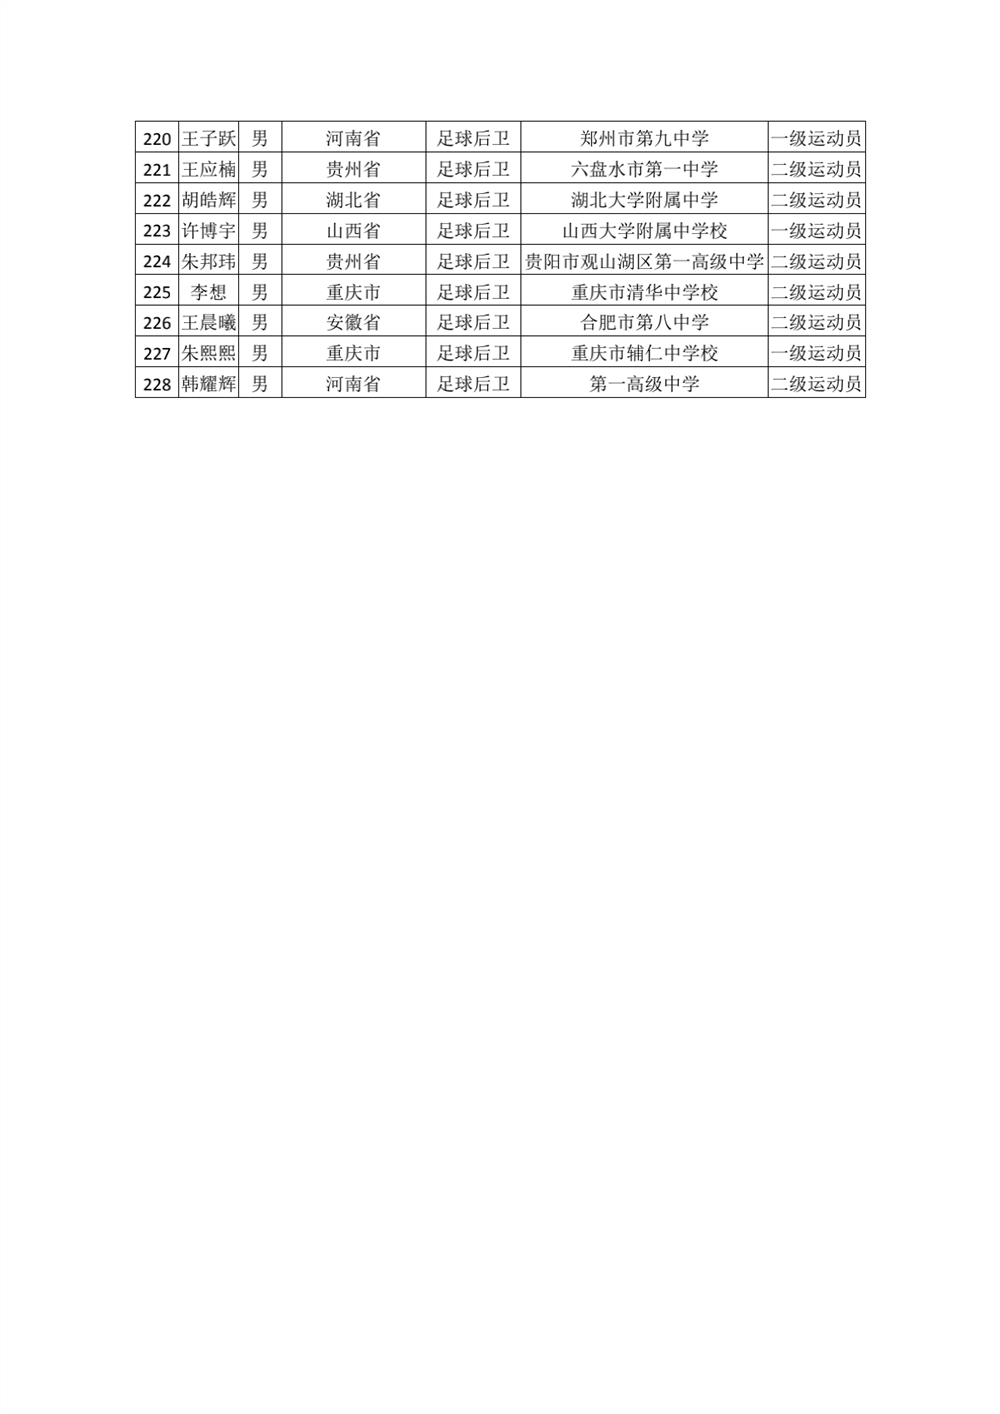 河南理工大学2022年高水平运动员专项测试初审合格名单公示